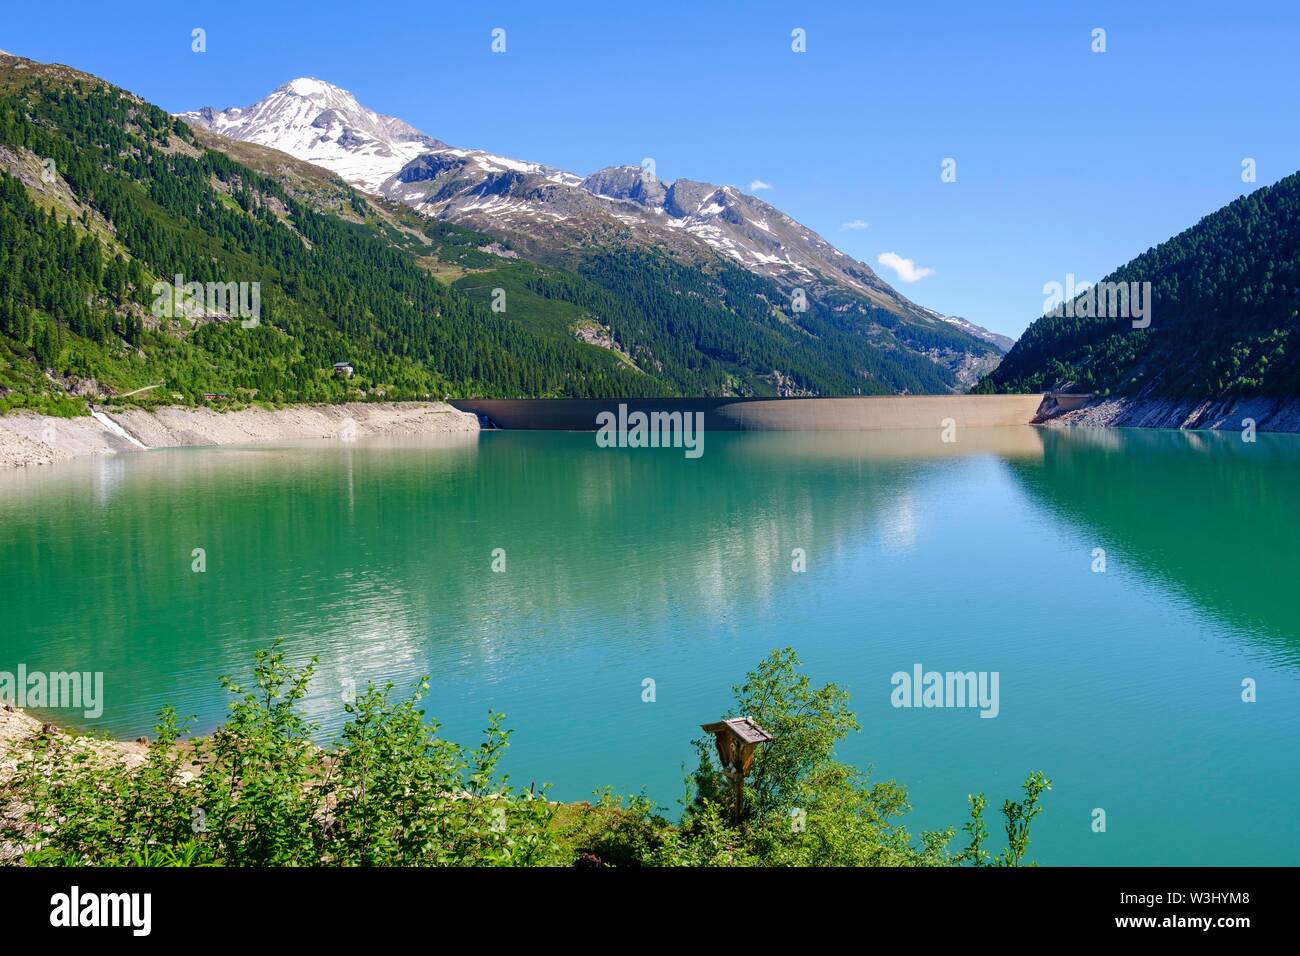 Schlegeis reservoir with dam wall, Hoher Riffler, Zillertaler Alps, near Finkenberg, Zillertal, Tyrol, Austria Stock Photo